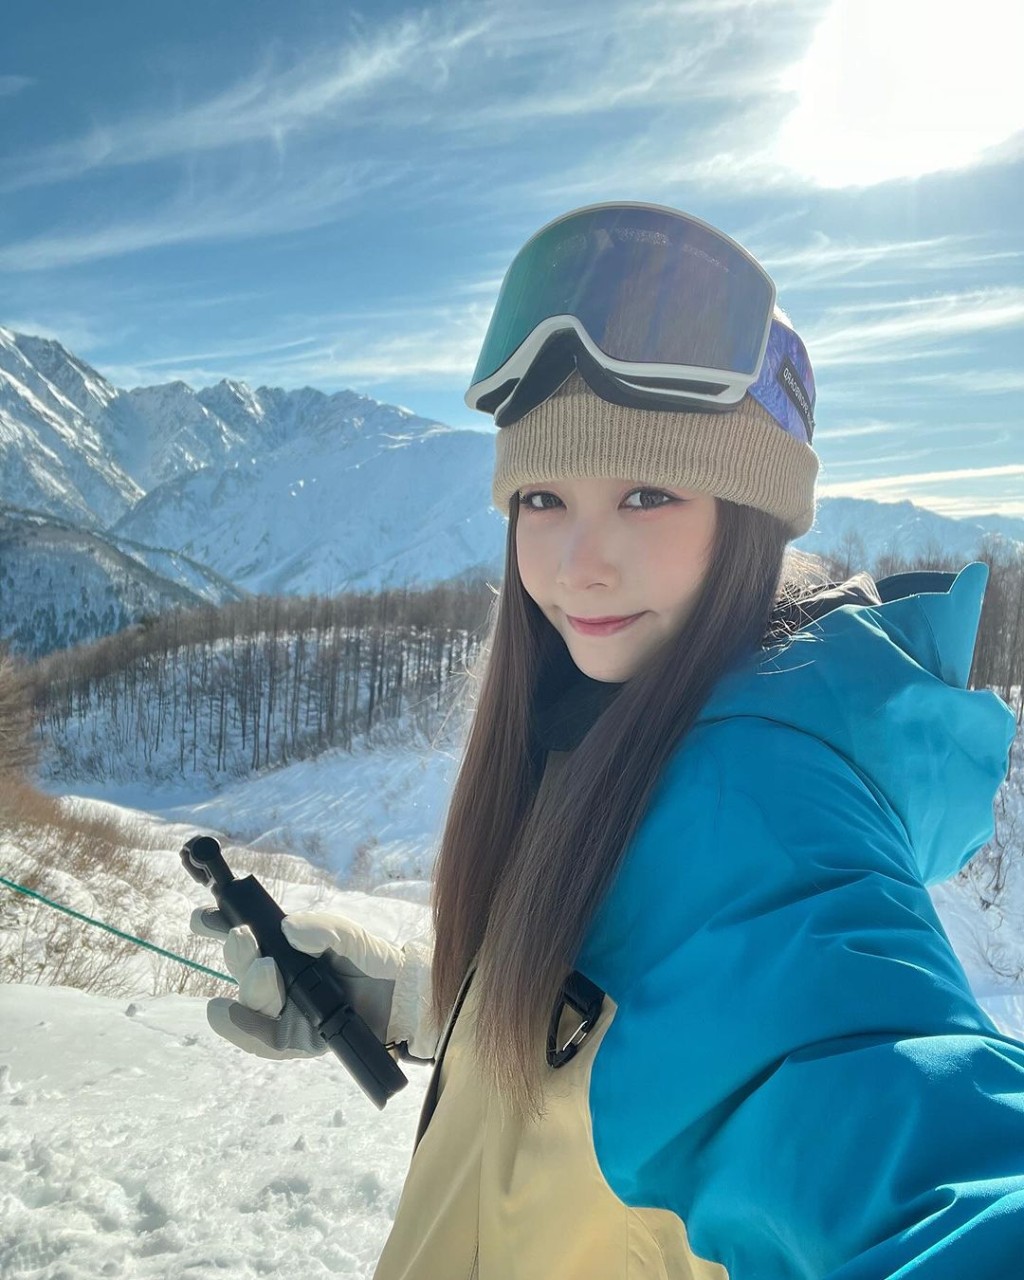 Rose Ma熱愛滑雪。